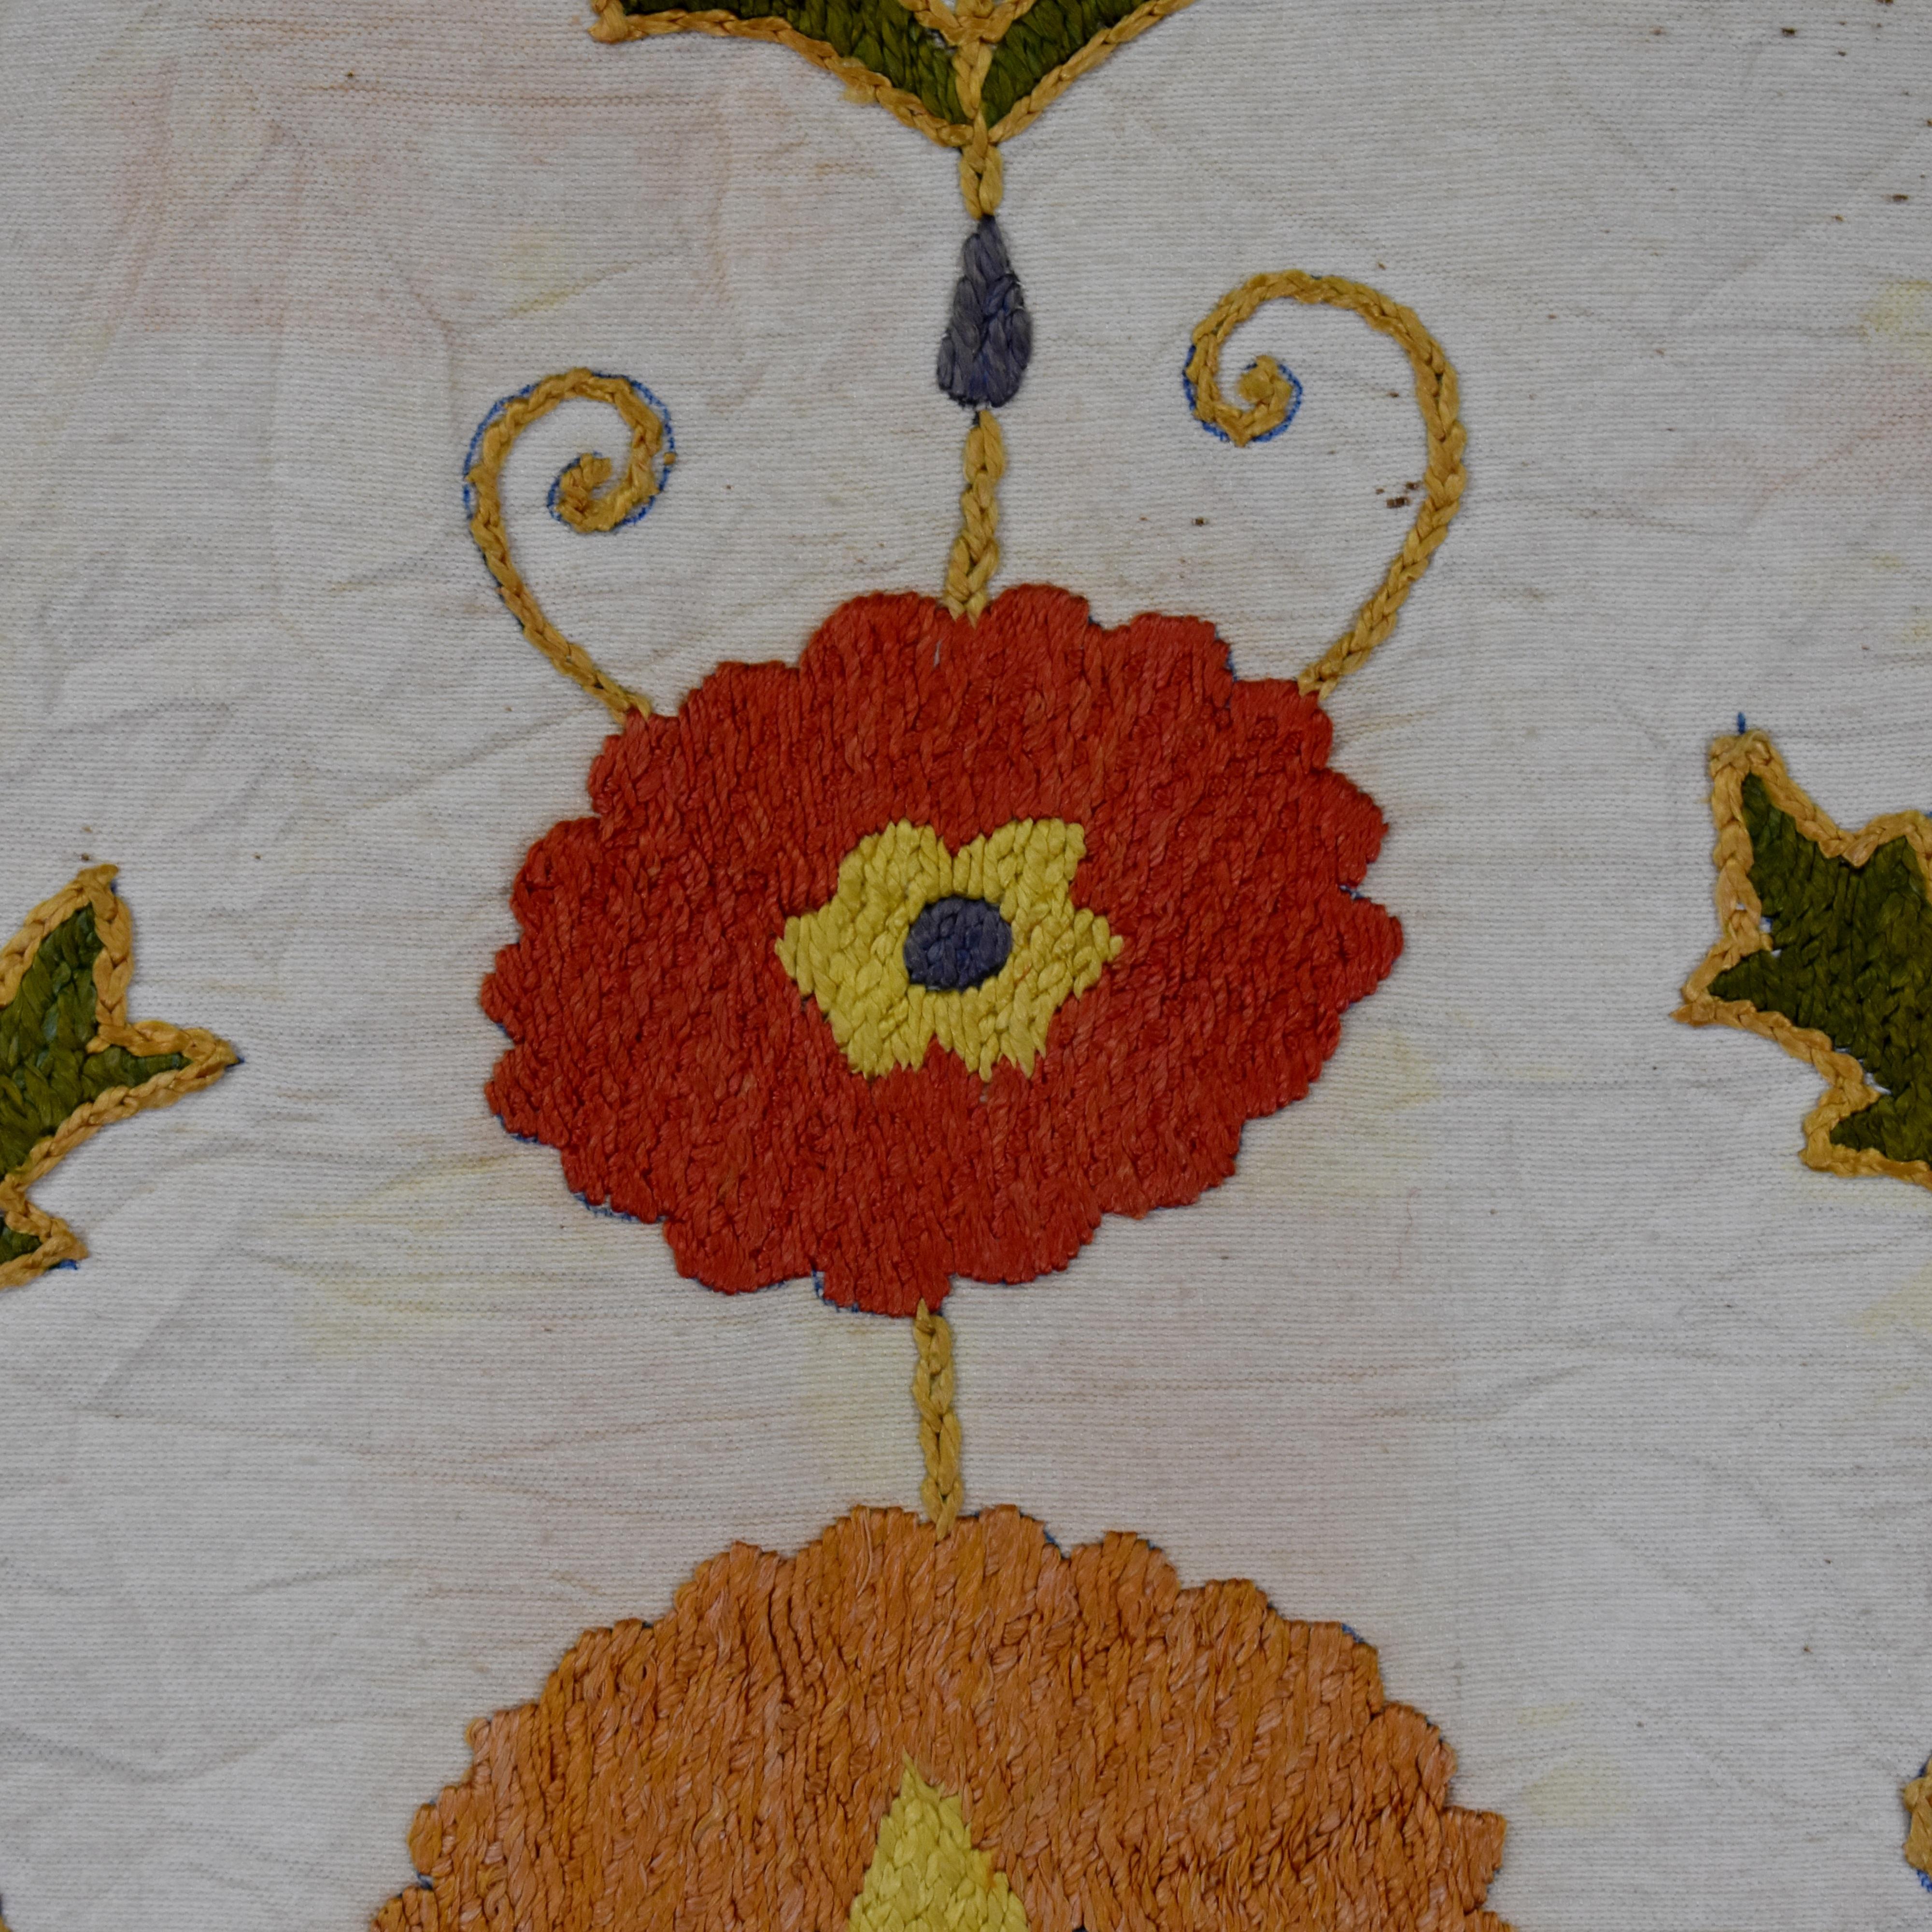 Uzbek Central Asian Embroidered Hanging For Sale